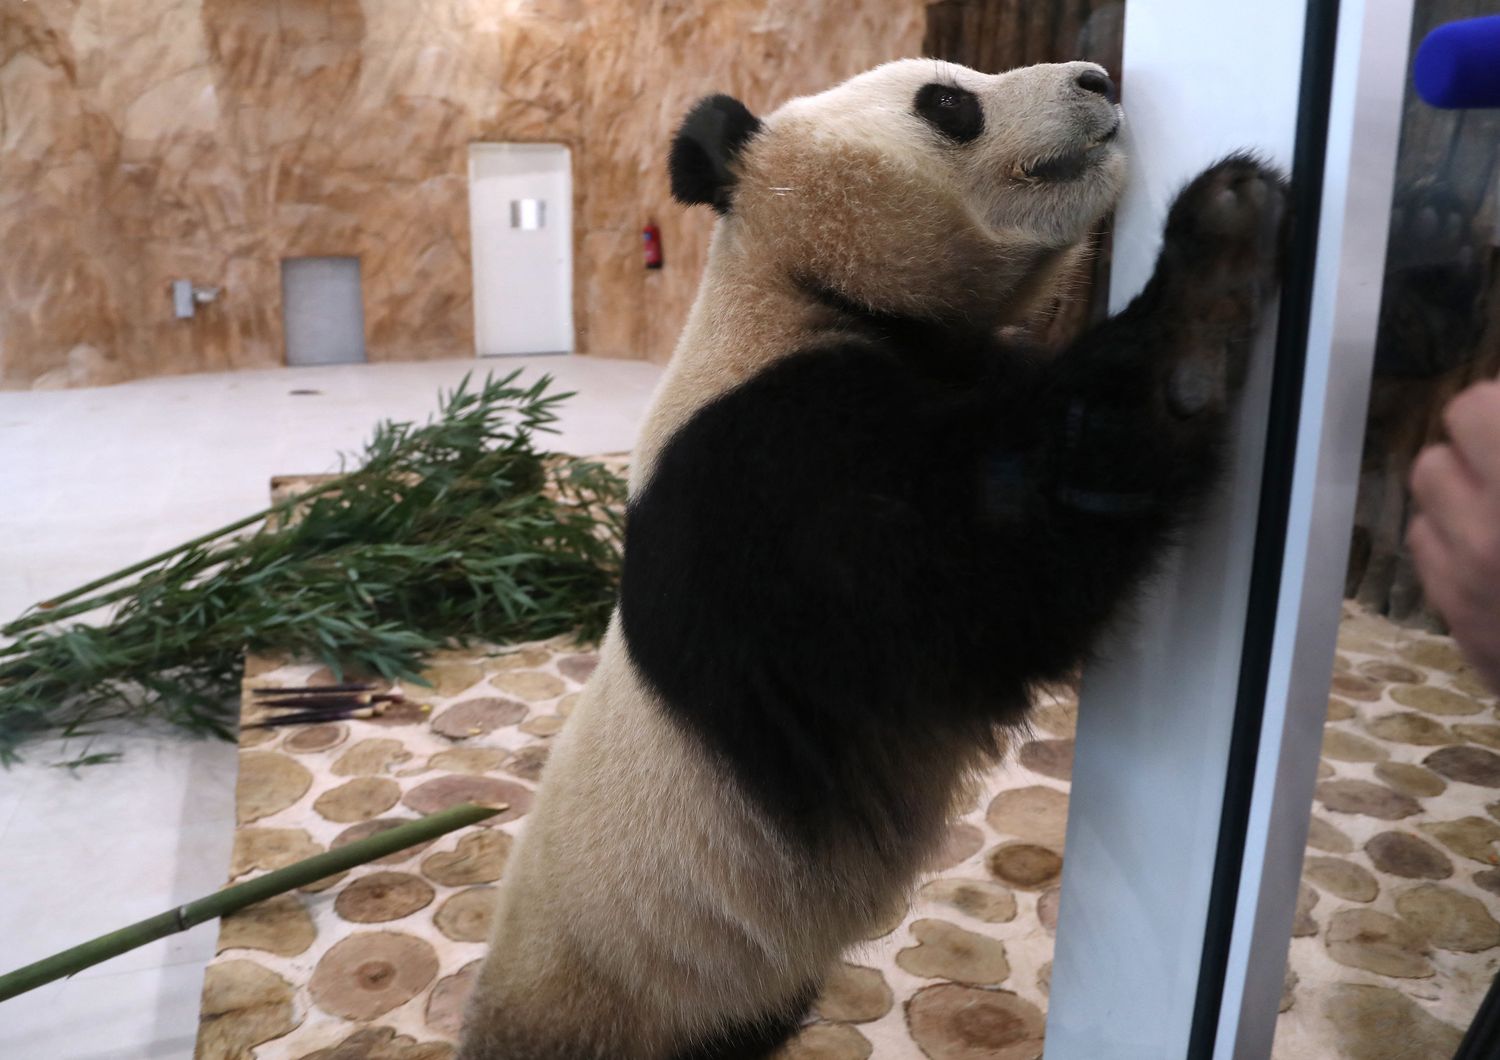 Uno dei panda giganti arrivato in Qatar